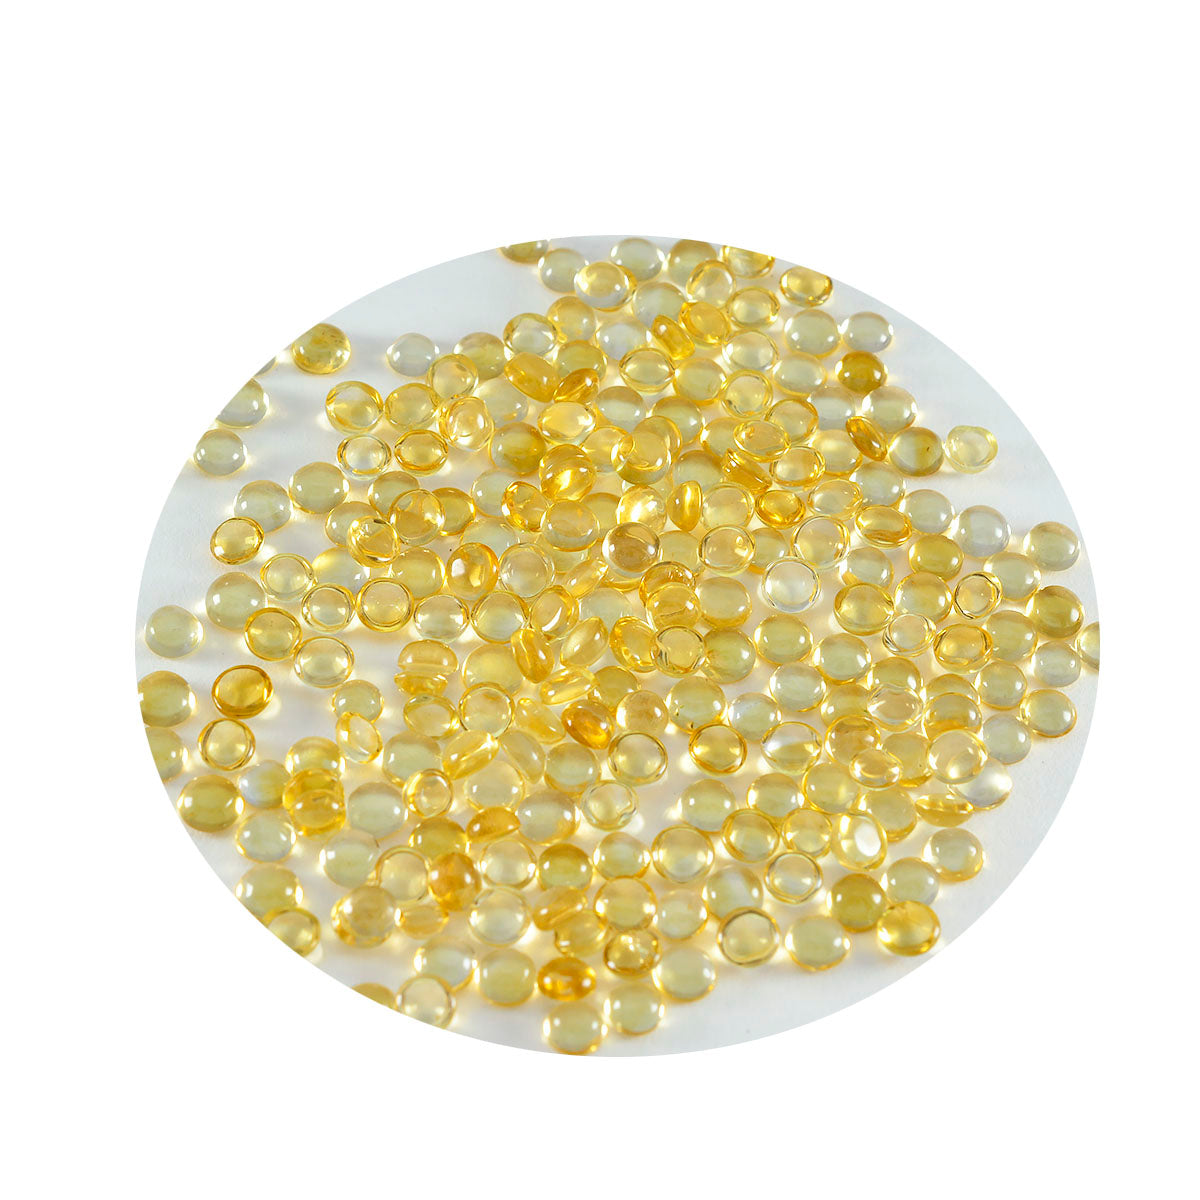 Riyogems 1 Stück gelber Citrin-Cabochon, 3 x 3 mm, runde Form, hübscher, hochwertiger, loser Edelstein